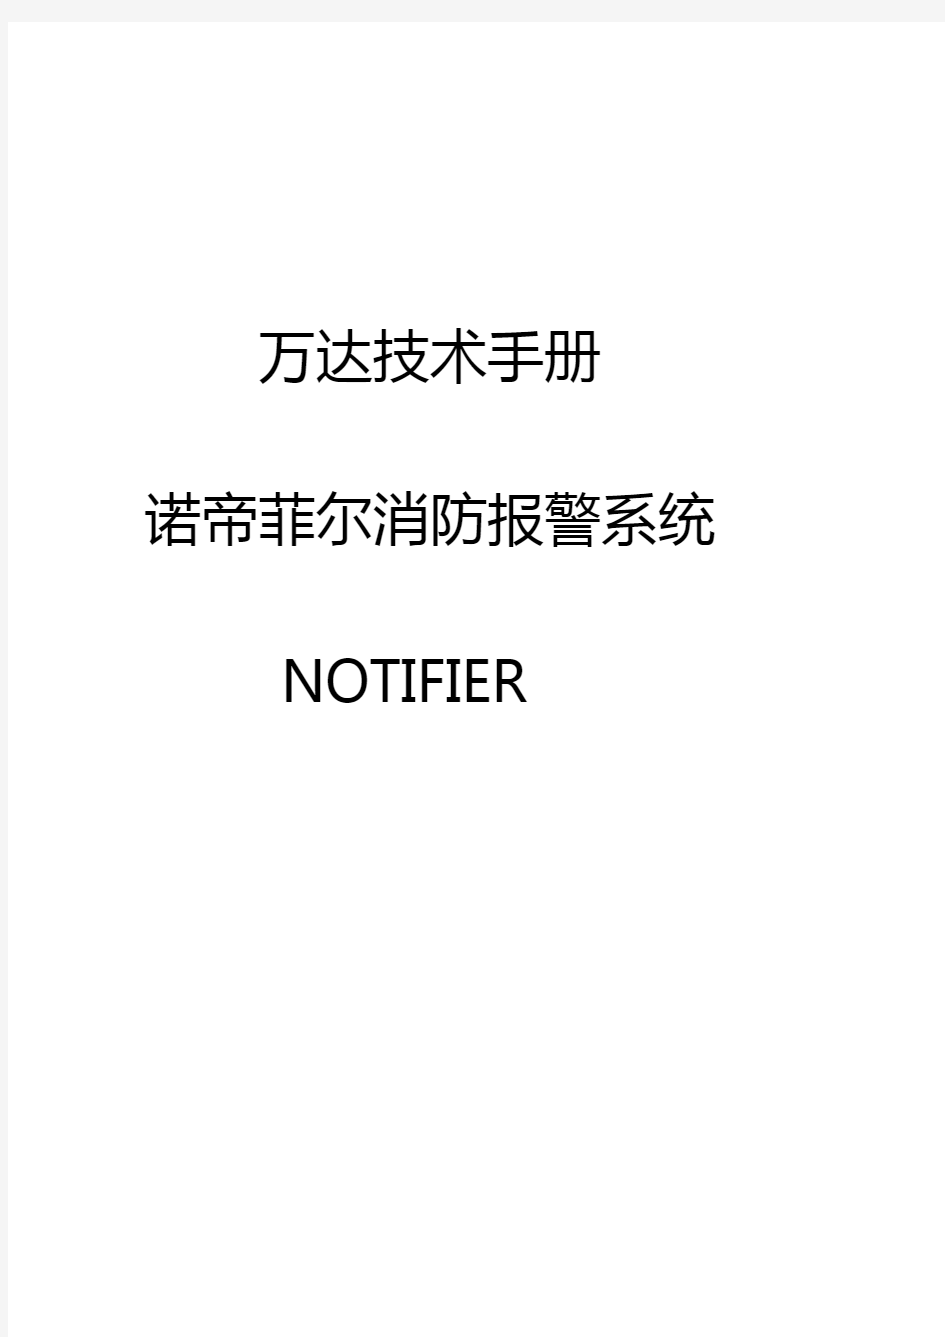 火灾报警控制器-诺蒂菲尔技术手册3(Notifier) (1)